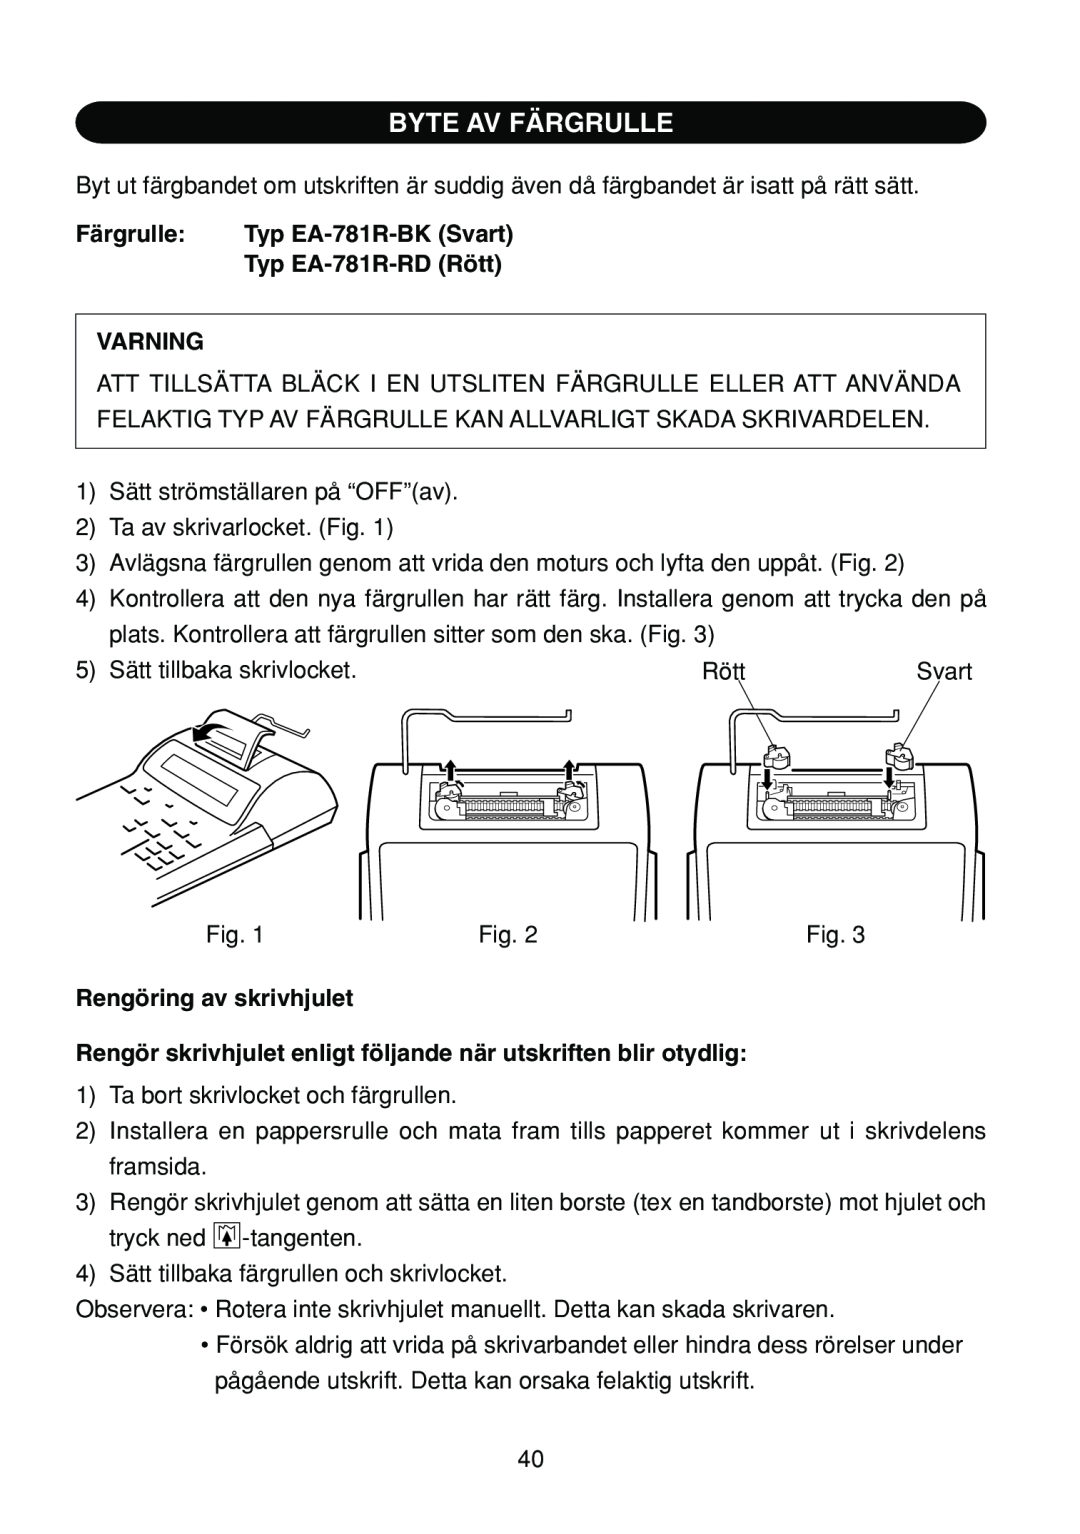 Sharp EL-1801C operation manual Byte Av Färgrulle, Typ EA-781R-RD Rött, Varning, Rengöring av skrivhjulet 